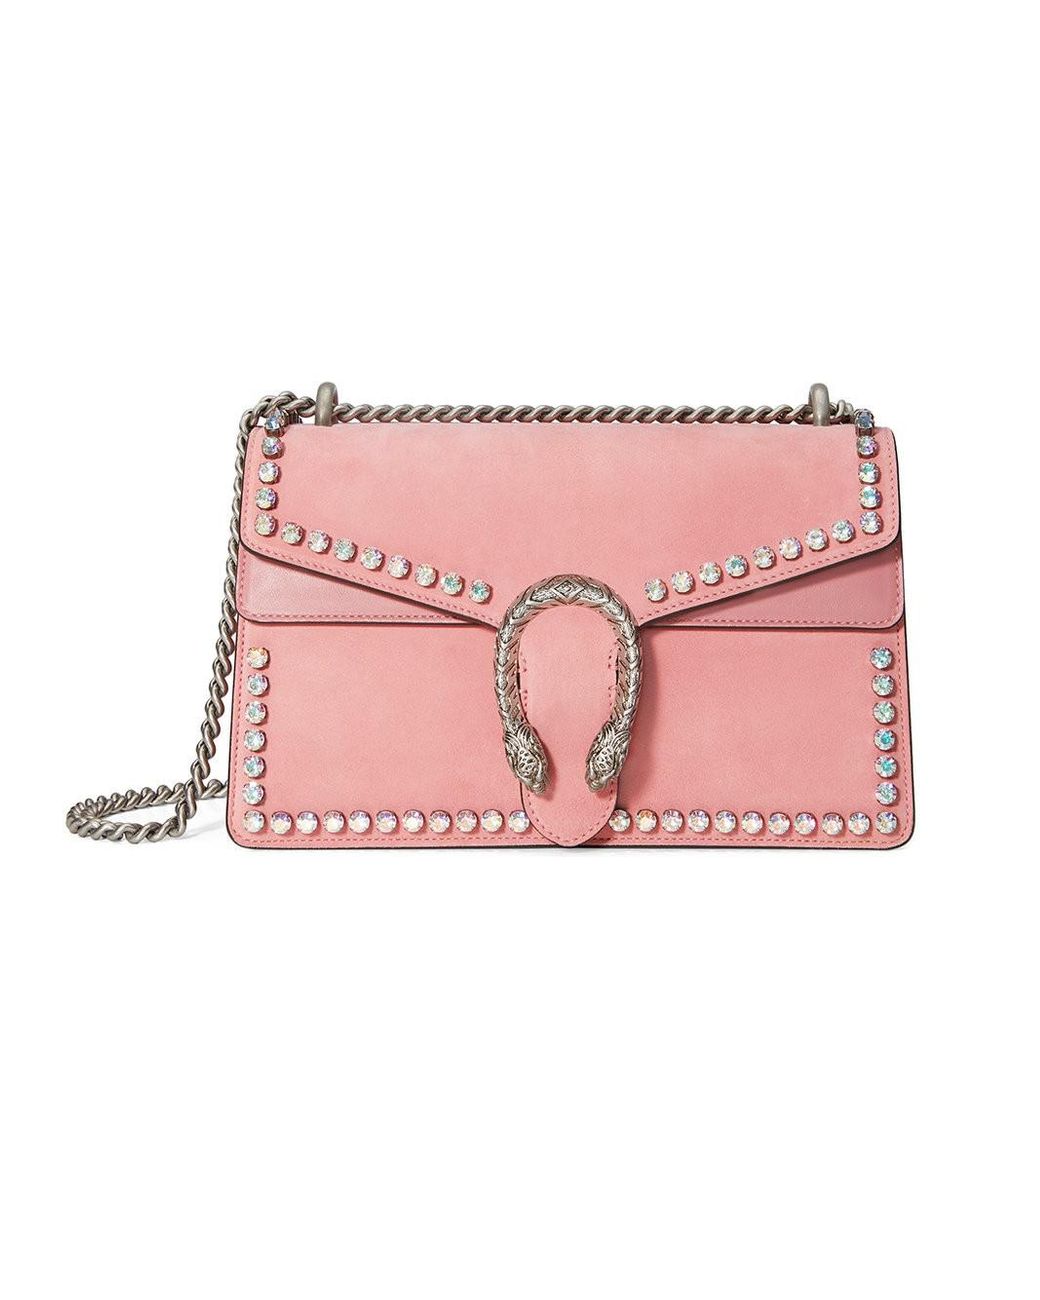 Gucci Pink Guccify Dionysus Small Shoulder Bag - Farfetch